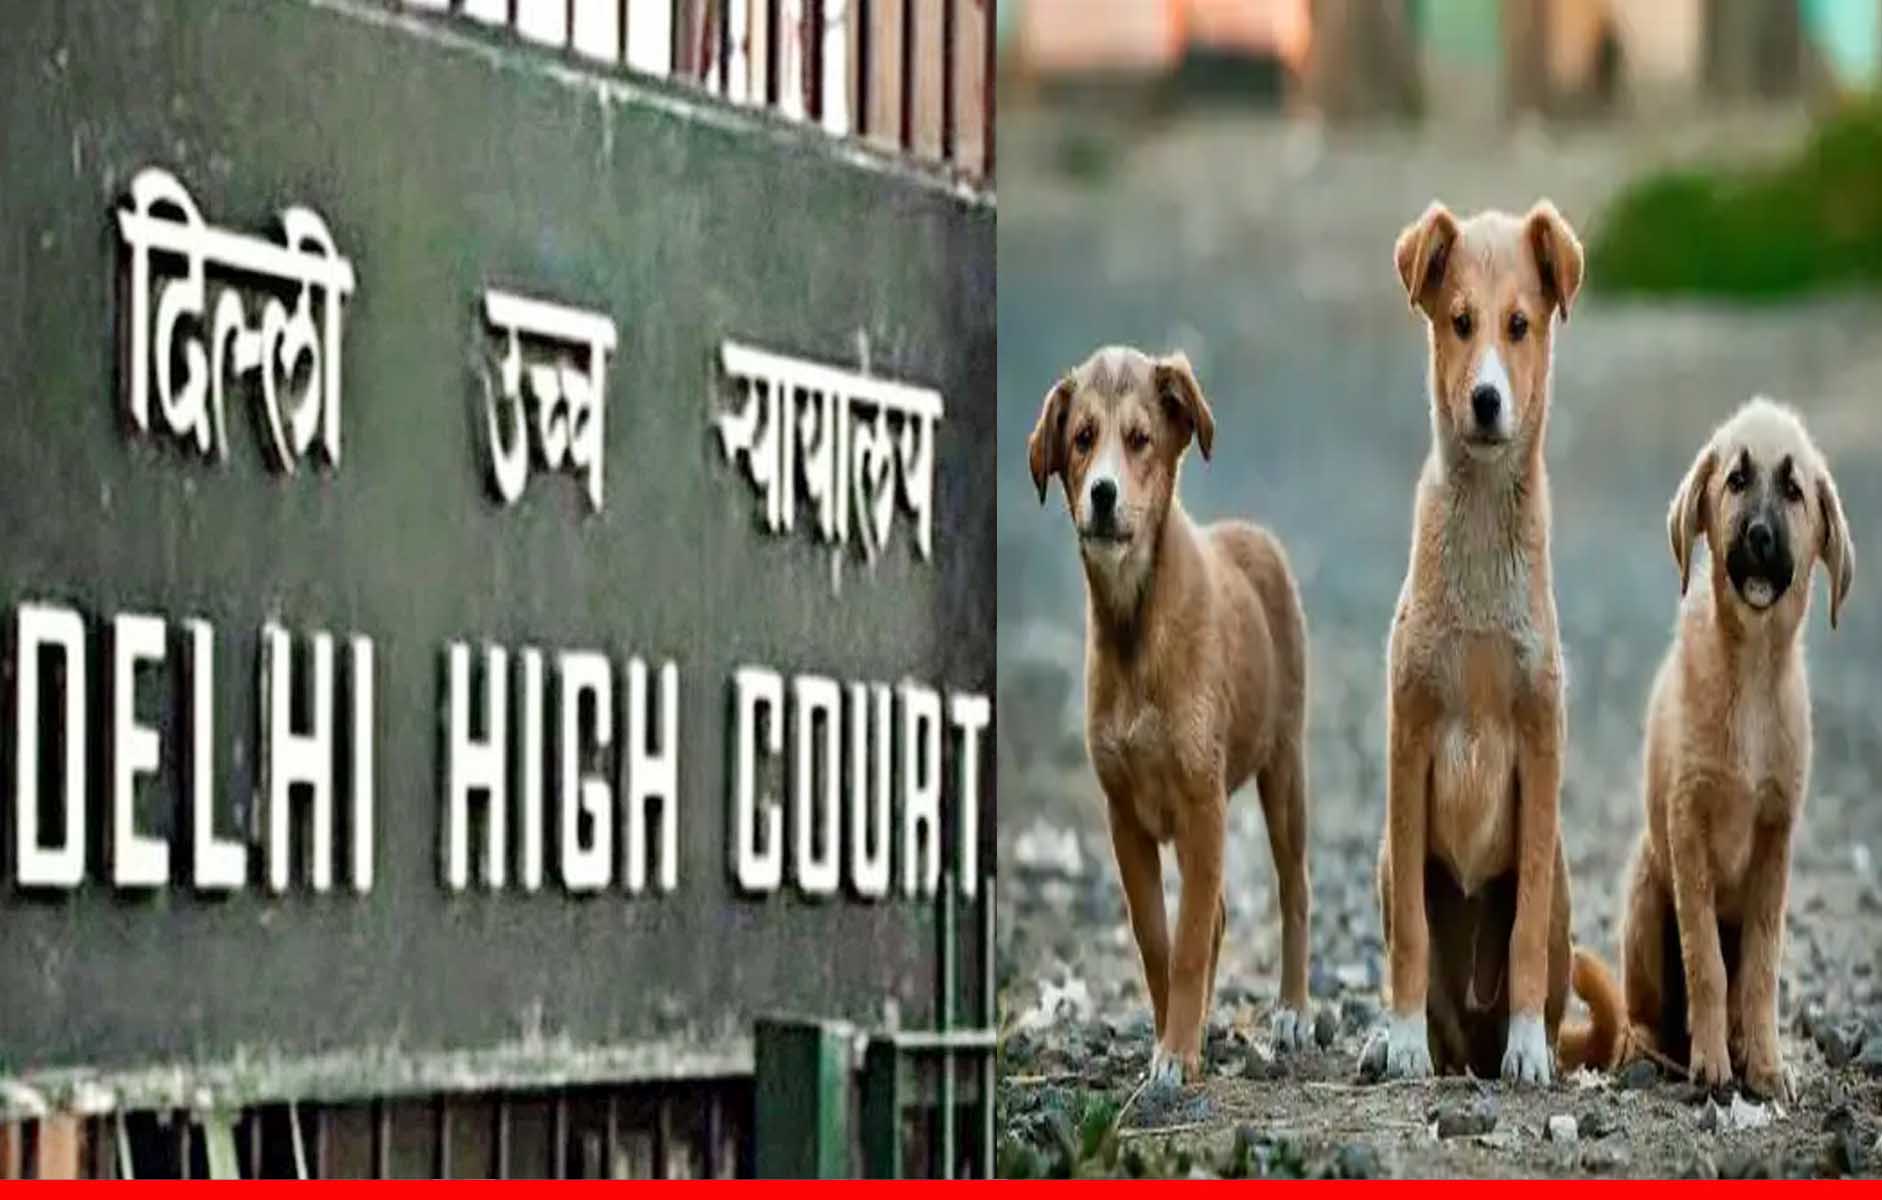 दिल्ली हाईकोर्ट ने कहा, कानून में गली के कुत्तों को भी सम्मान के साथ जीने और भोजन का अधिकार